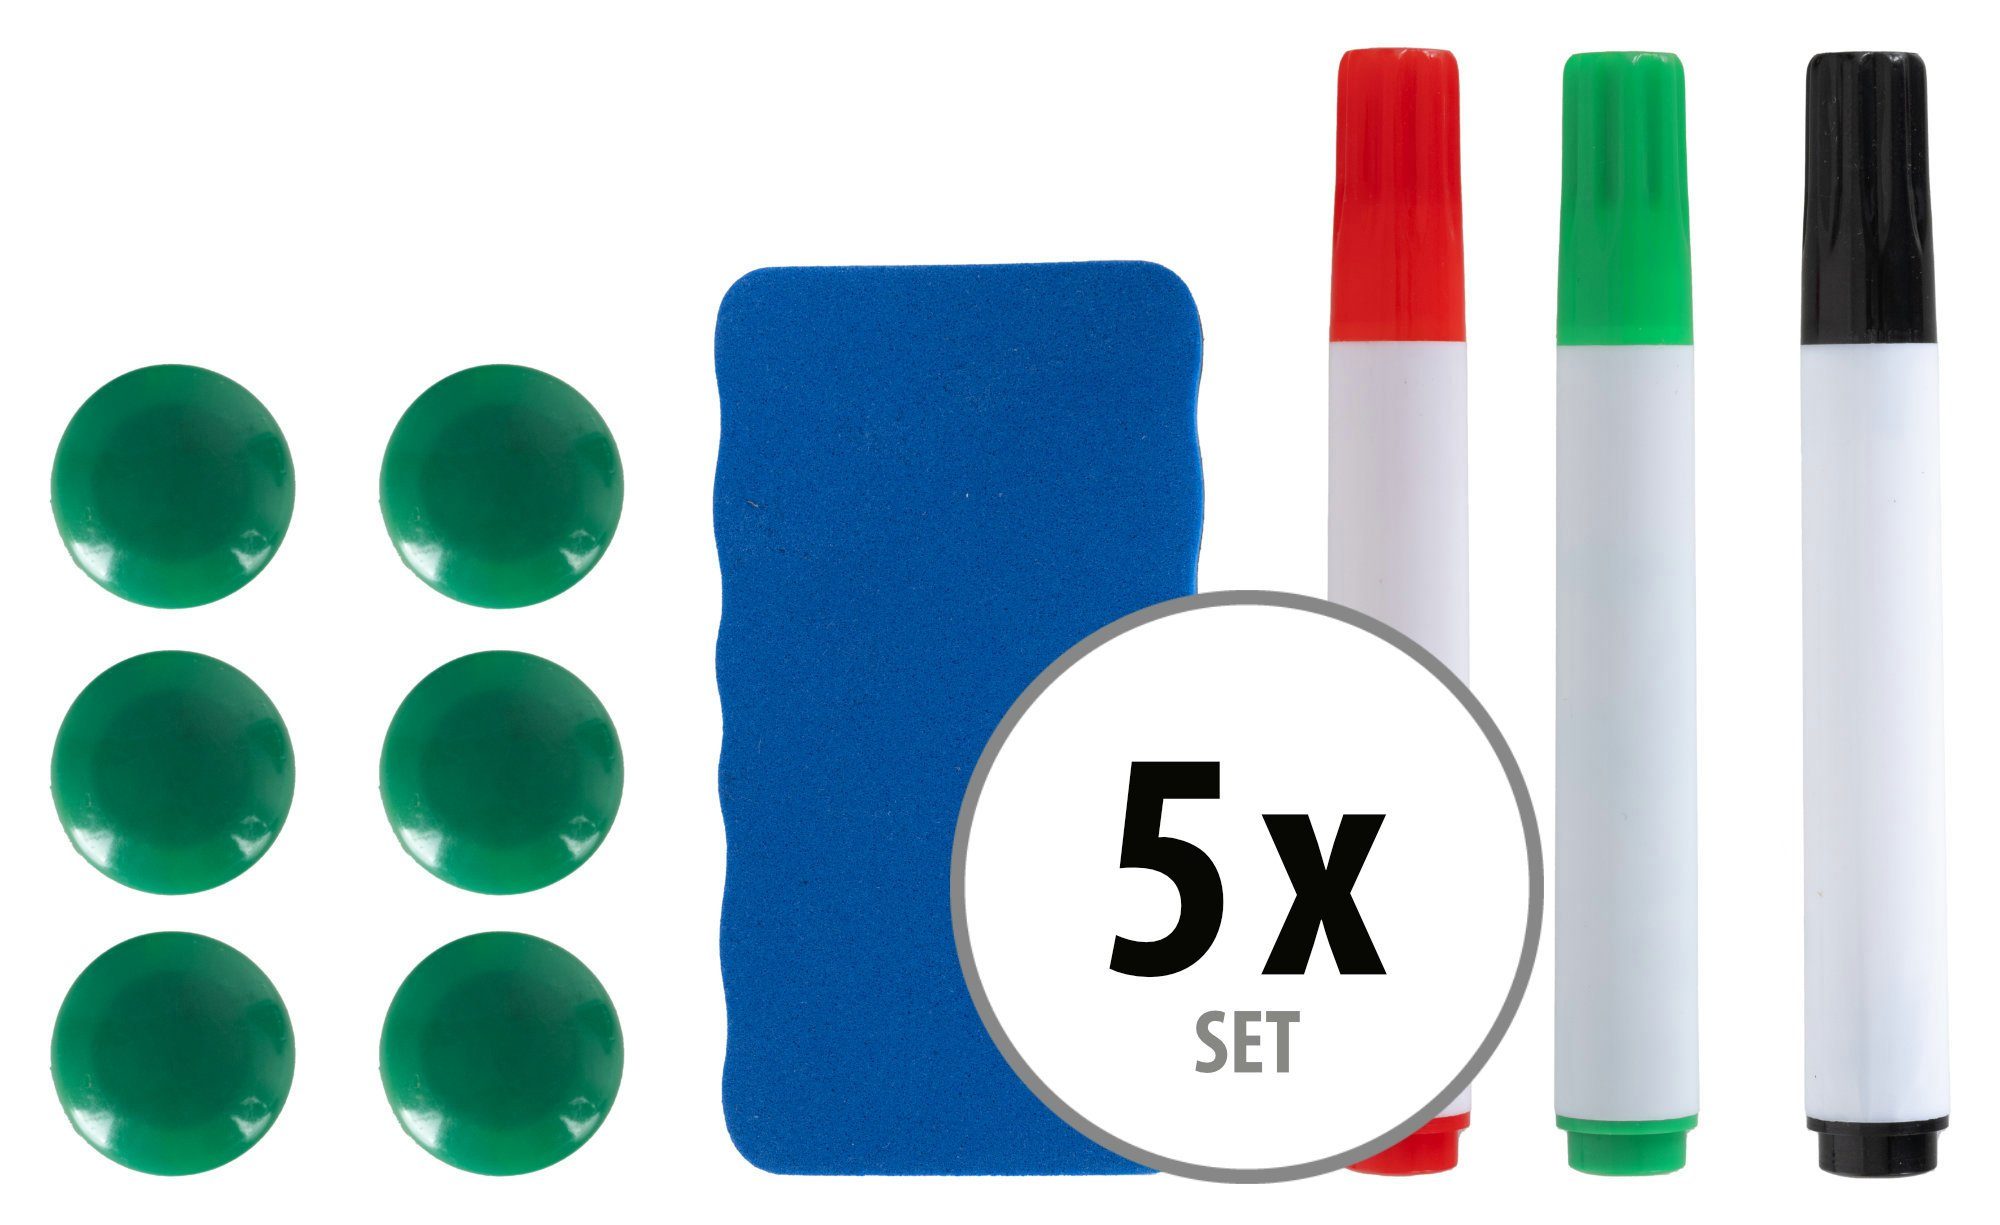 Pronomic Whiteboard Marker Whiteboard Zubehör Set, (Zubehör 5x Set, 50-tlg., 15 Marker Stifte in Rot, Grün und Schwarz), 5 Schwamm Radierer und Wischer, 30 Haft-Magnete